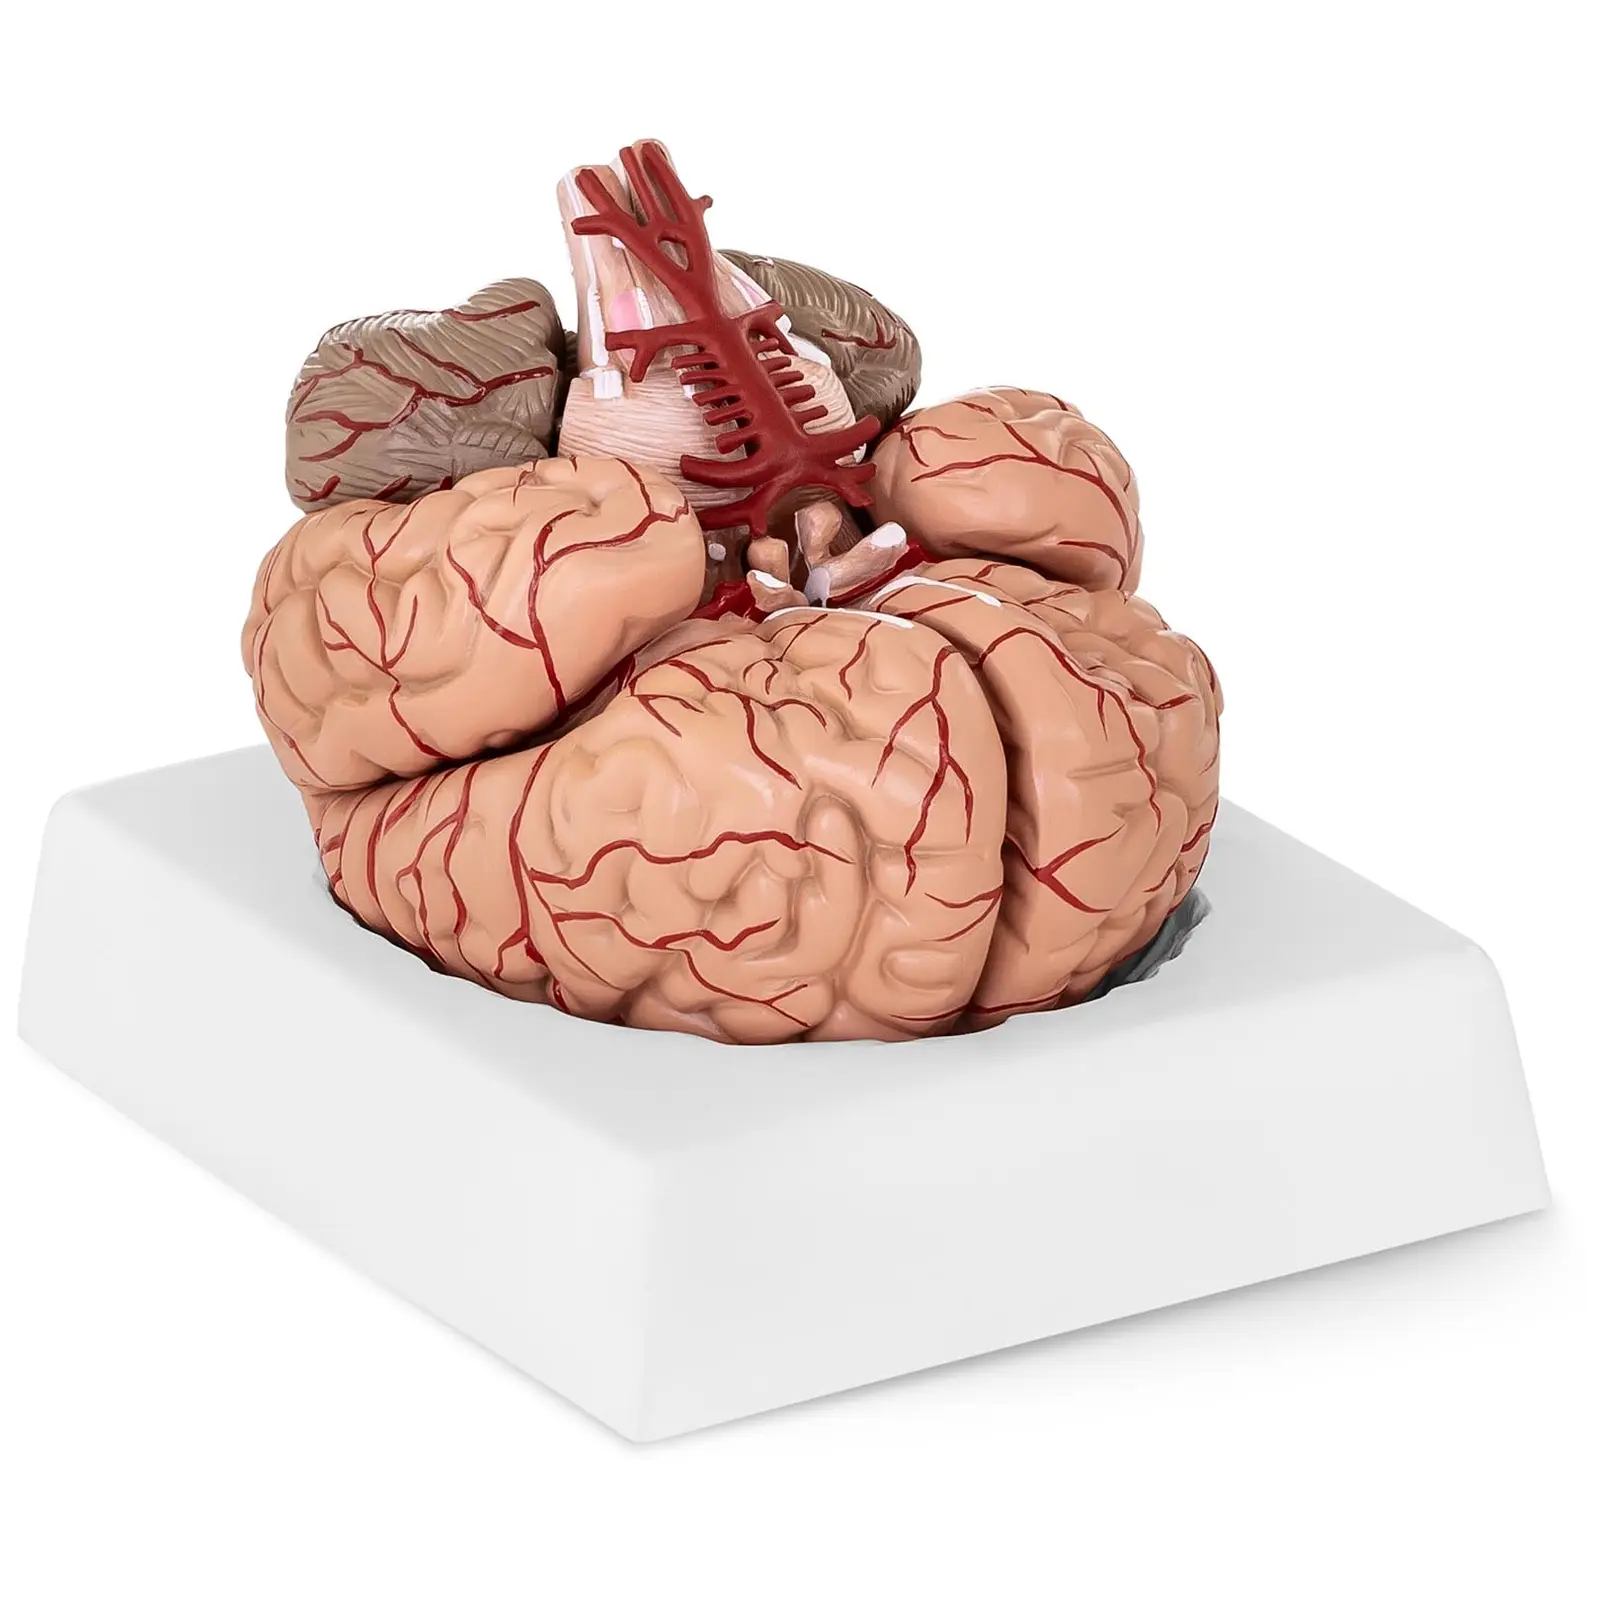 Emberi agy modell - 9 szegmens - életnagyságú